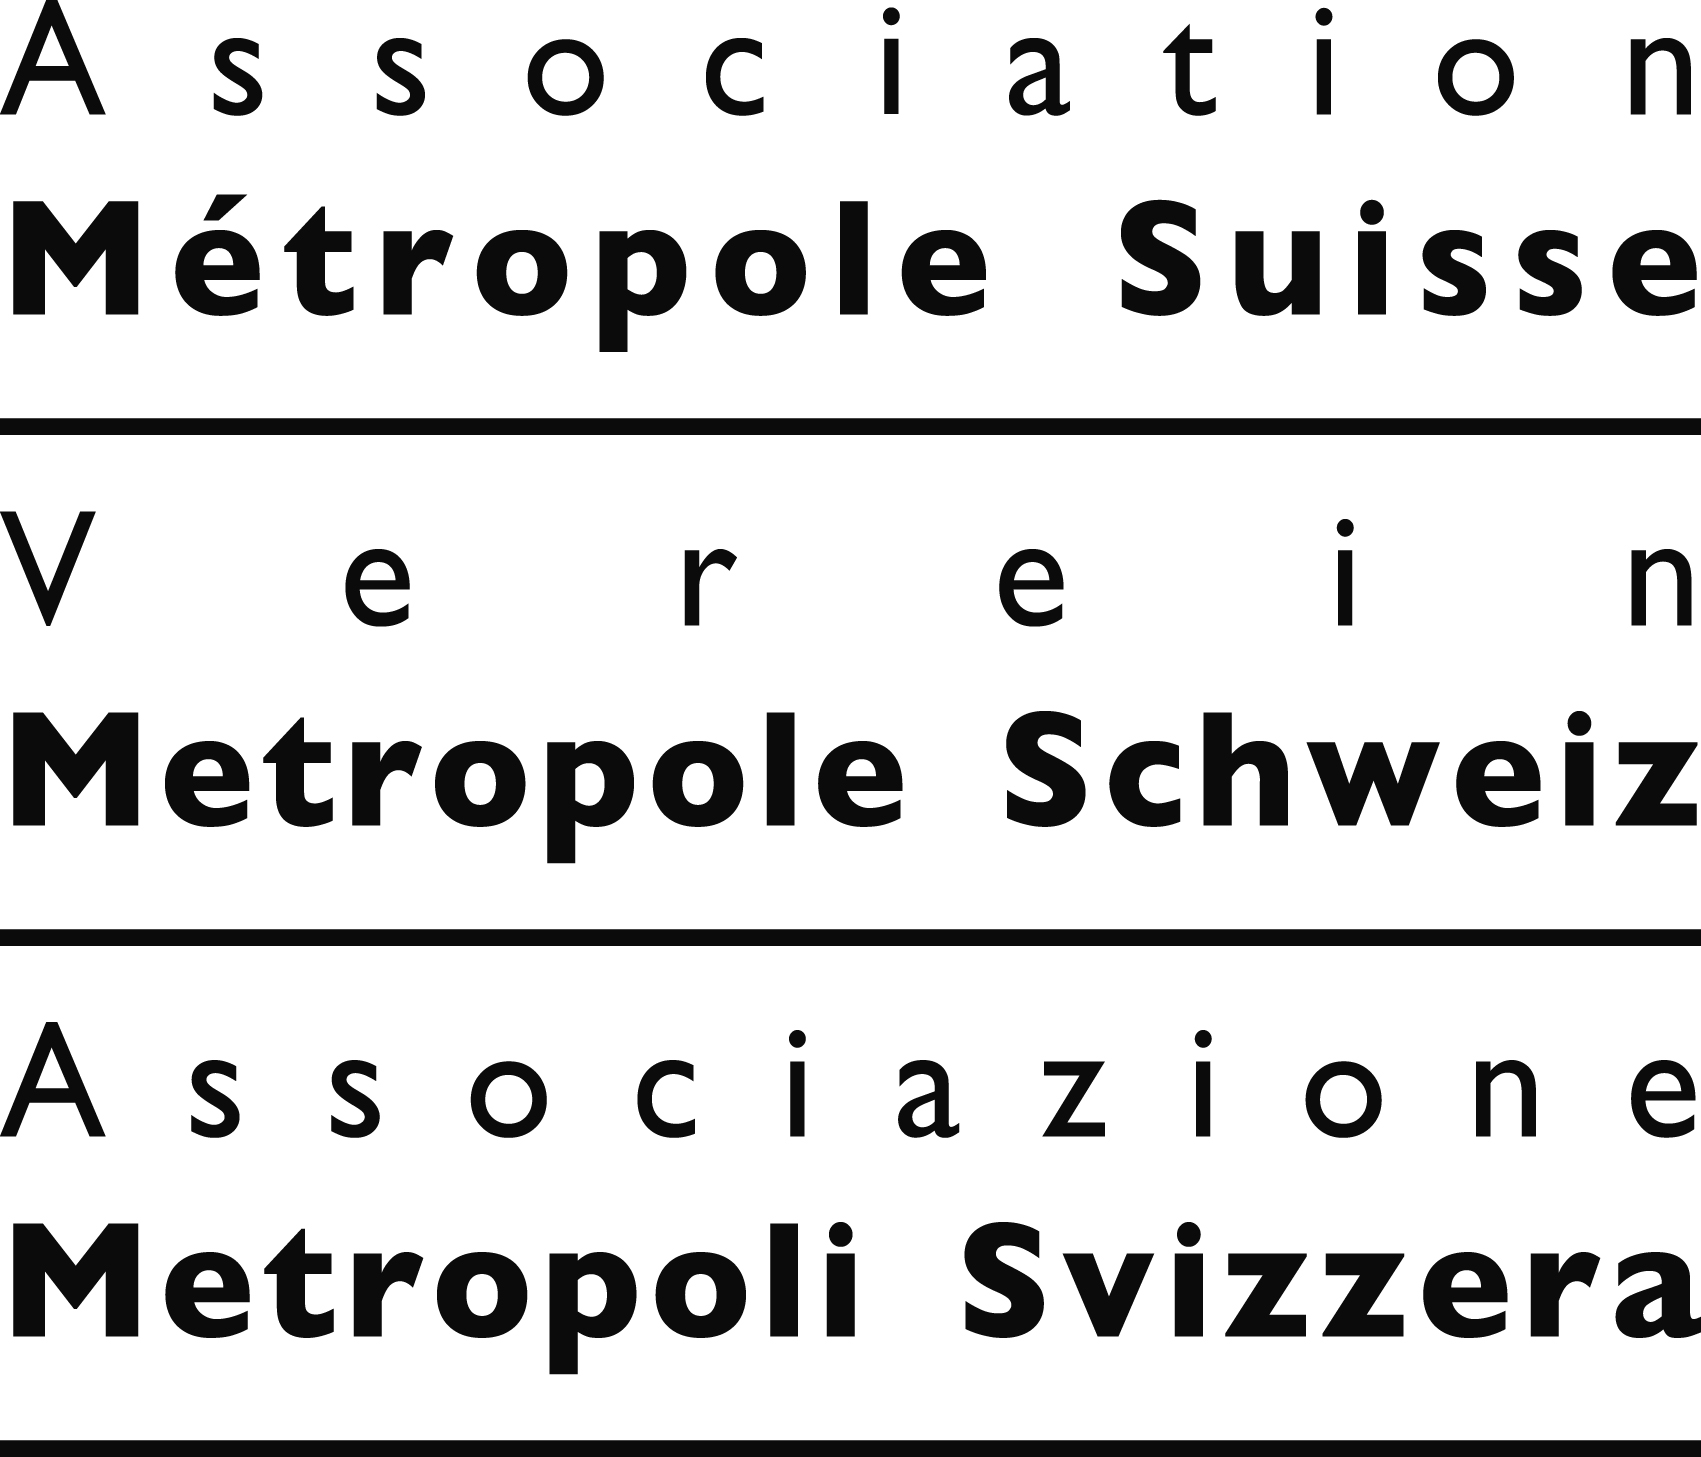 (c) Metropole-ch.ch